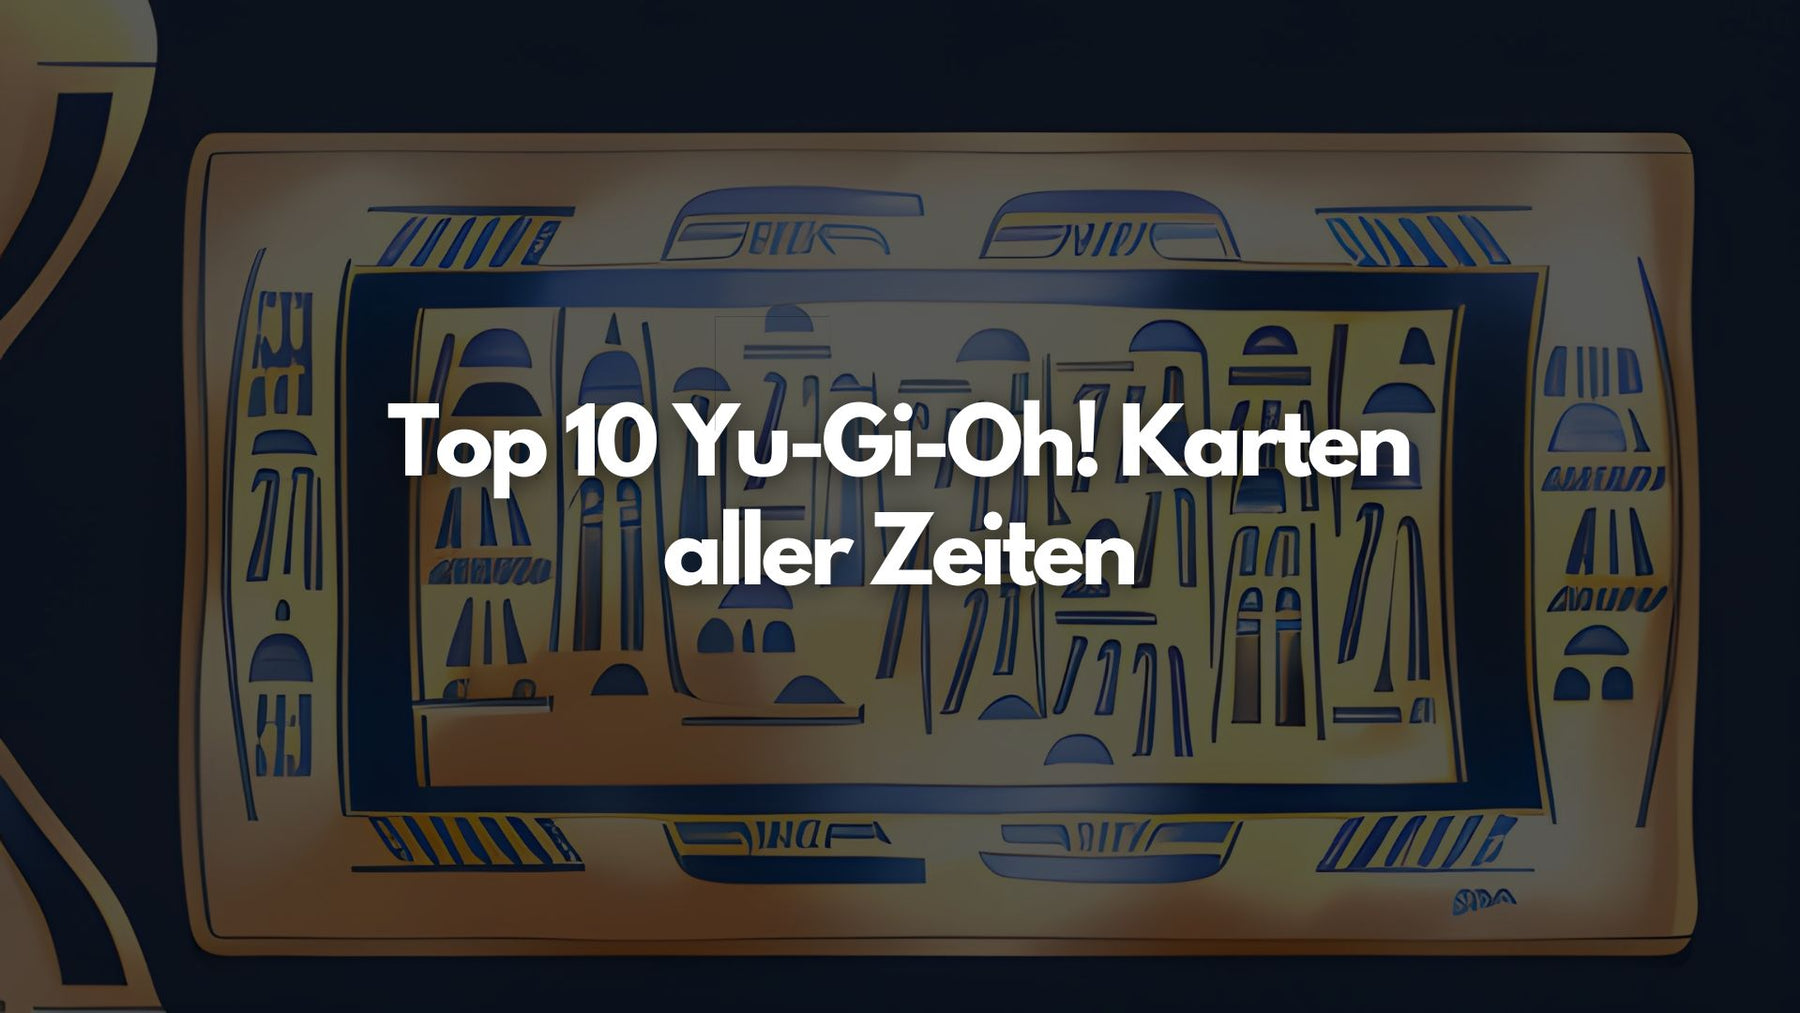 Top 10 Yu-Gi-Oh! Karten aller Zeiten